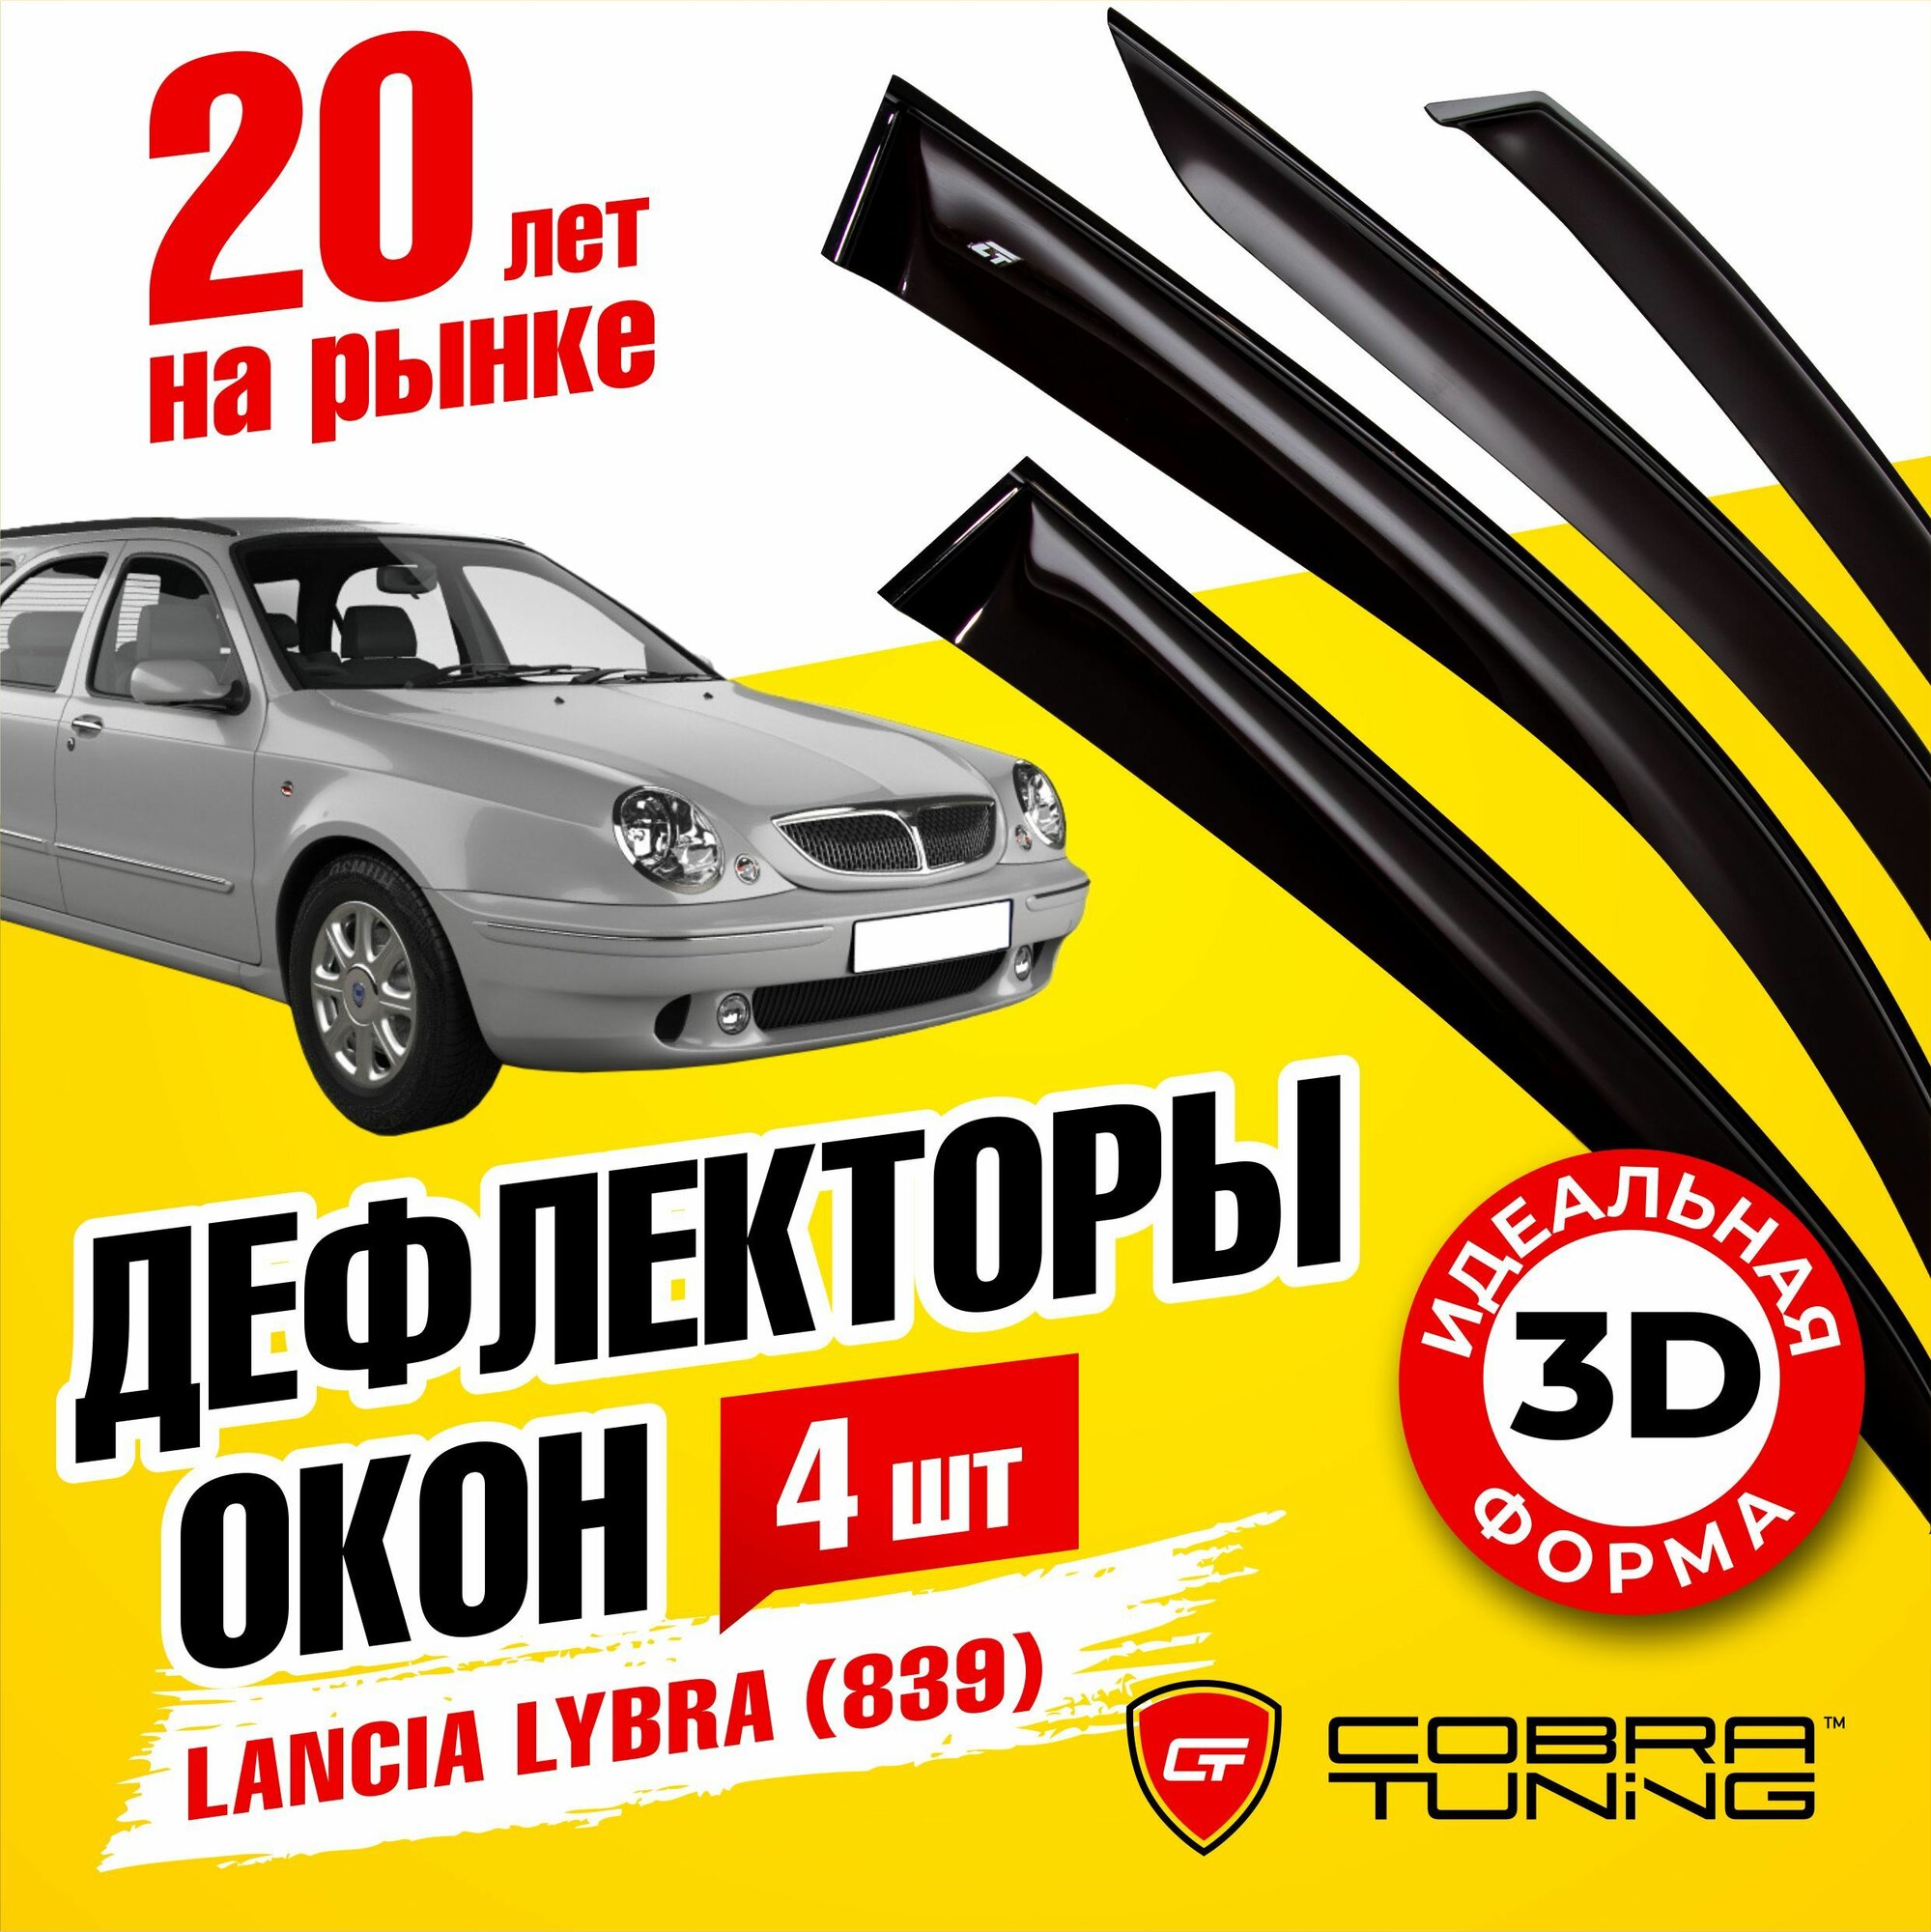 Дефлекторы боковых окон для Lancia Lybra (Лянча Либра) седан, универсал (839) 1999-2005, ветровики на двери автомобиля, Cobra Tuning